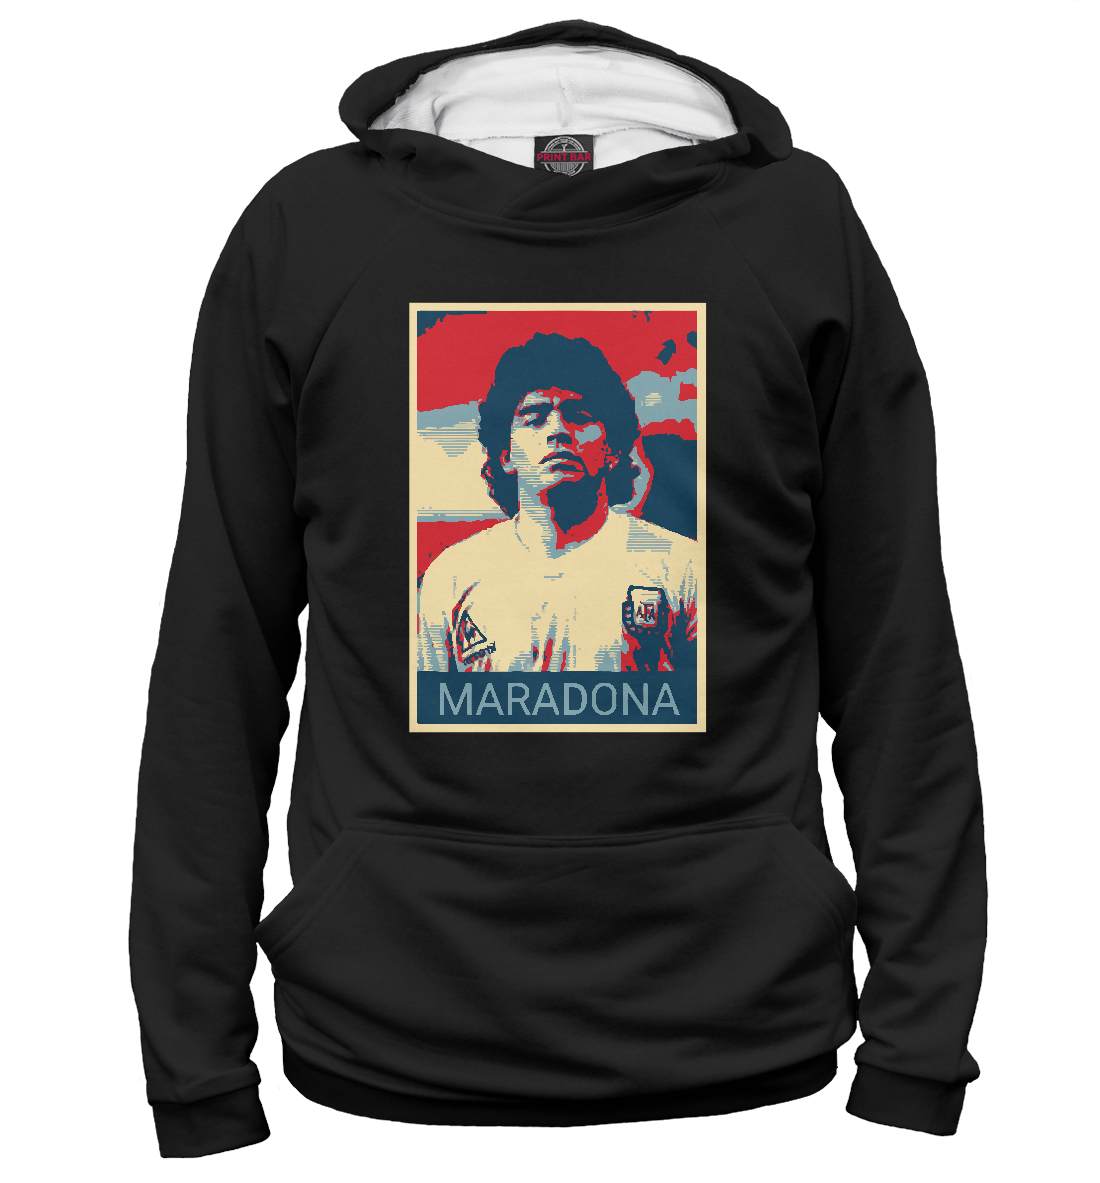 Мужской Худи Maradona, артикул FLT-836145-hud-2mp